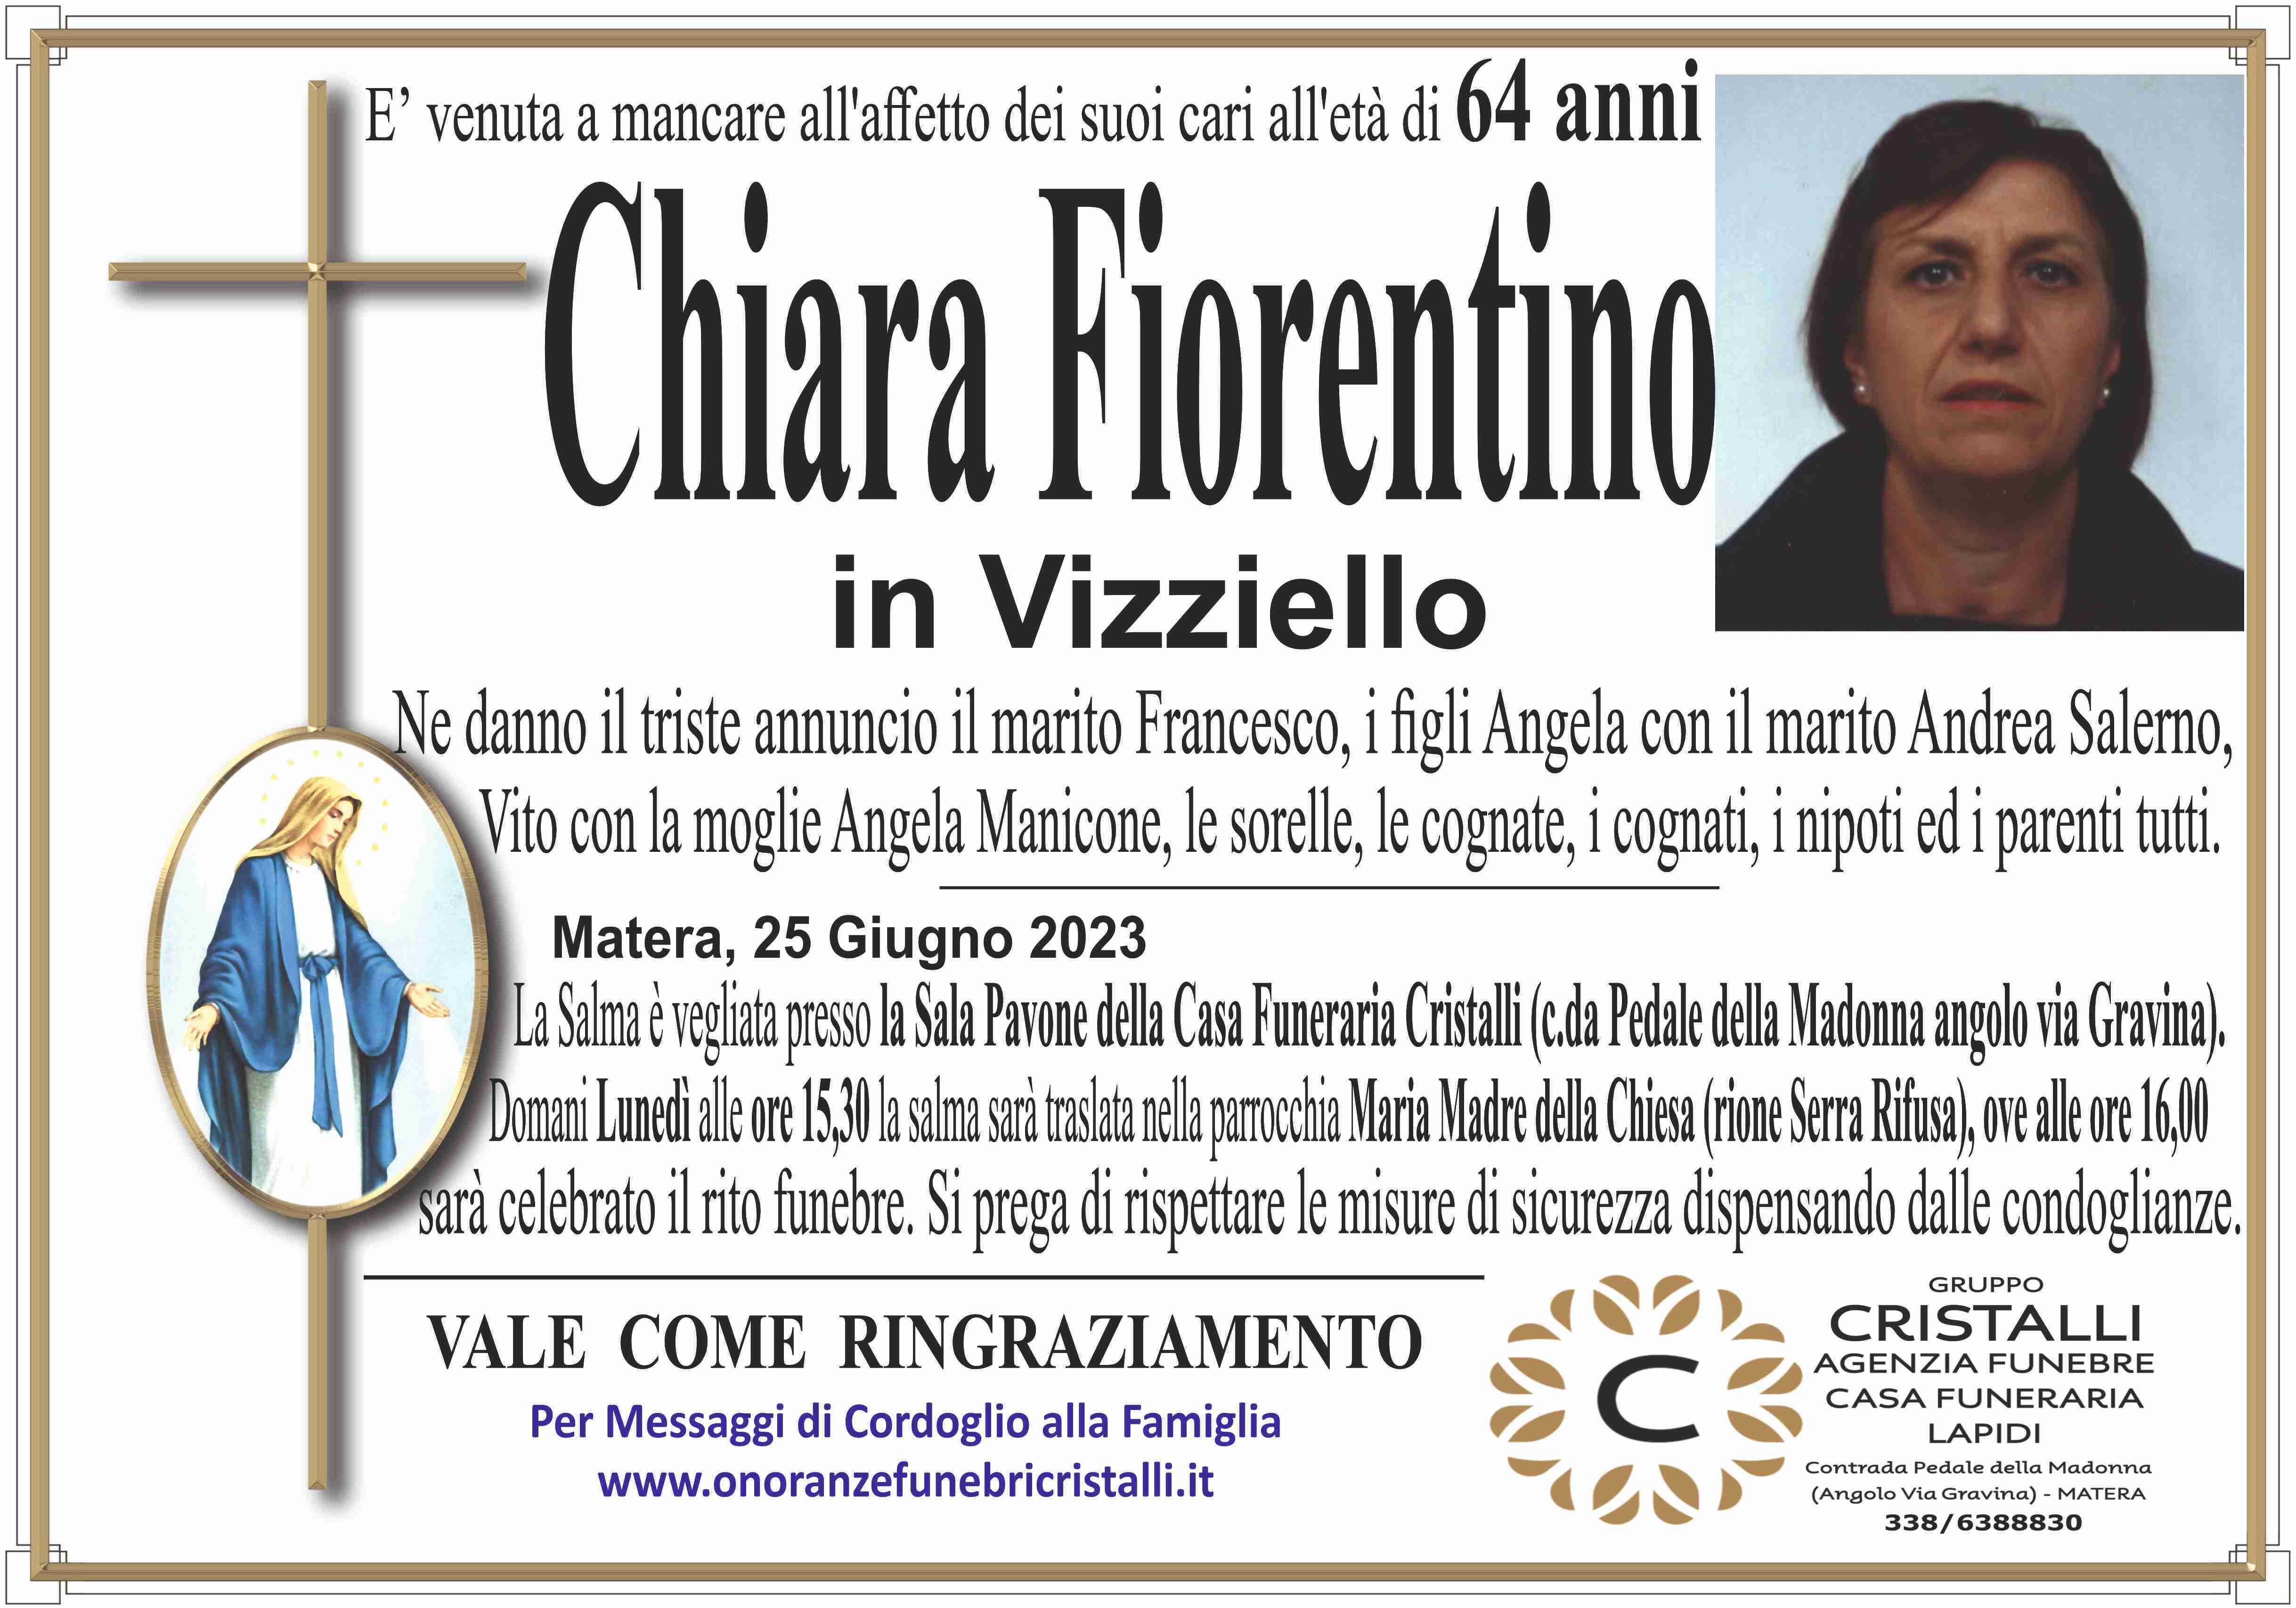 Chiara Fiorentino